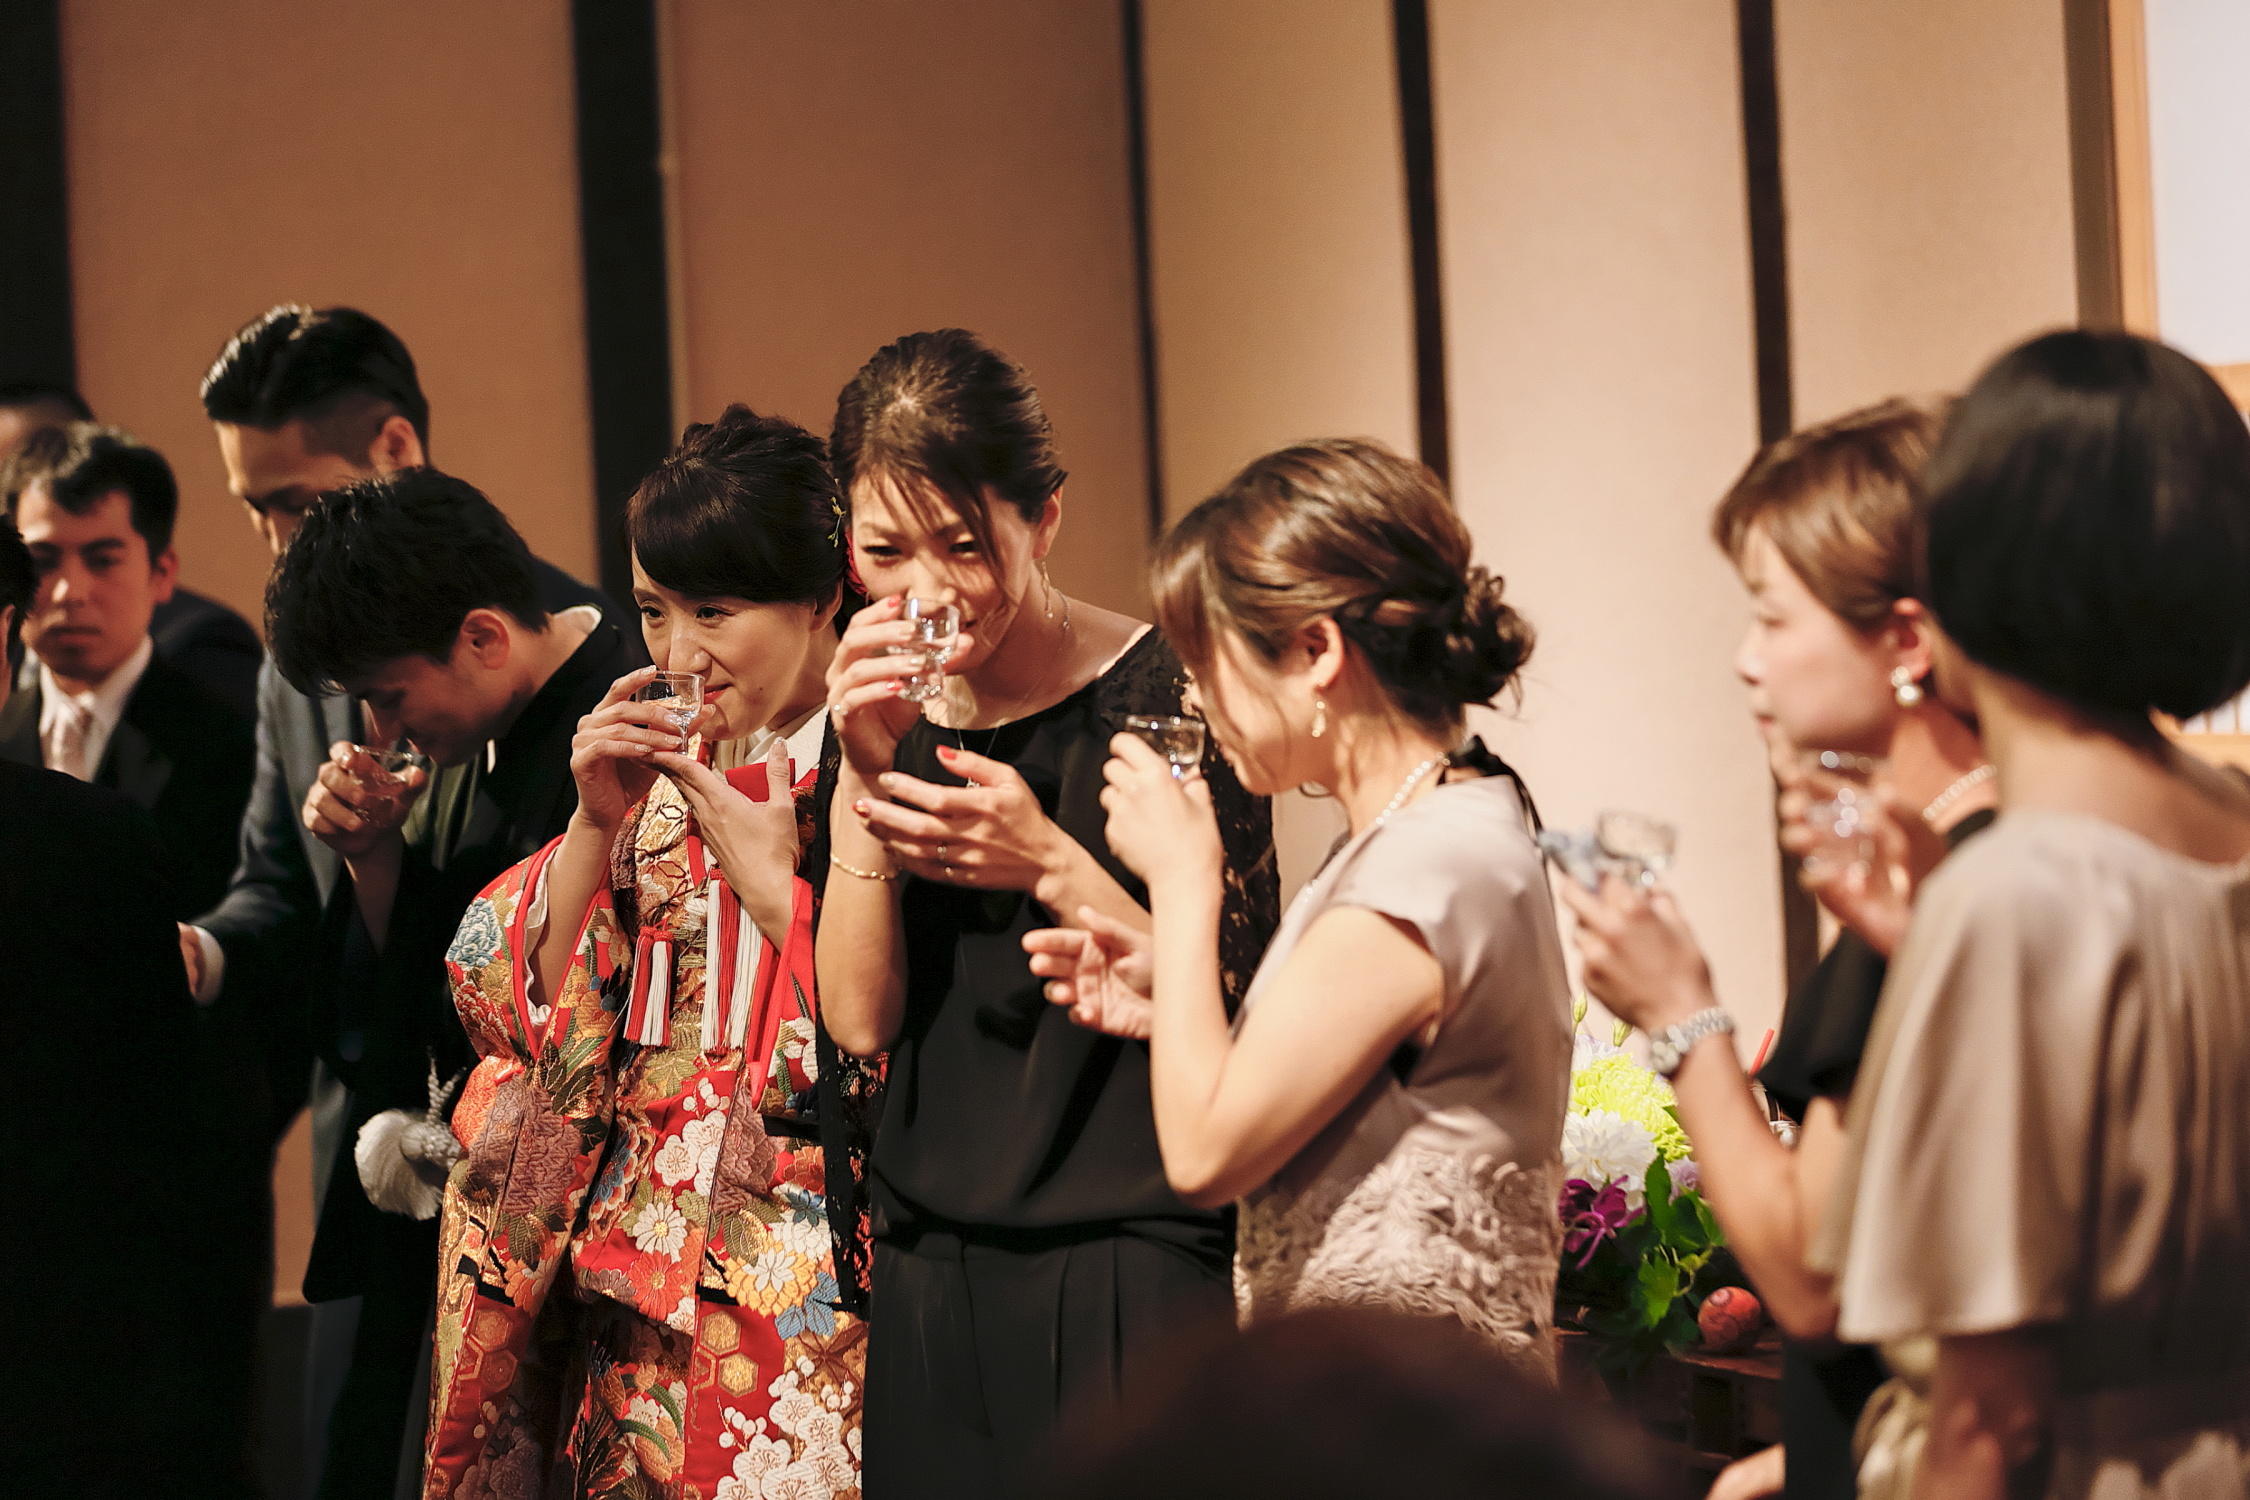 利き酒コンテスト スタッフブログ 福岡の結婚式場 神社挙式と披露宴会場 博多百年蔵 ウェディング